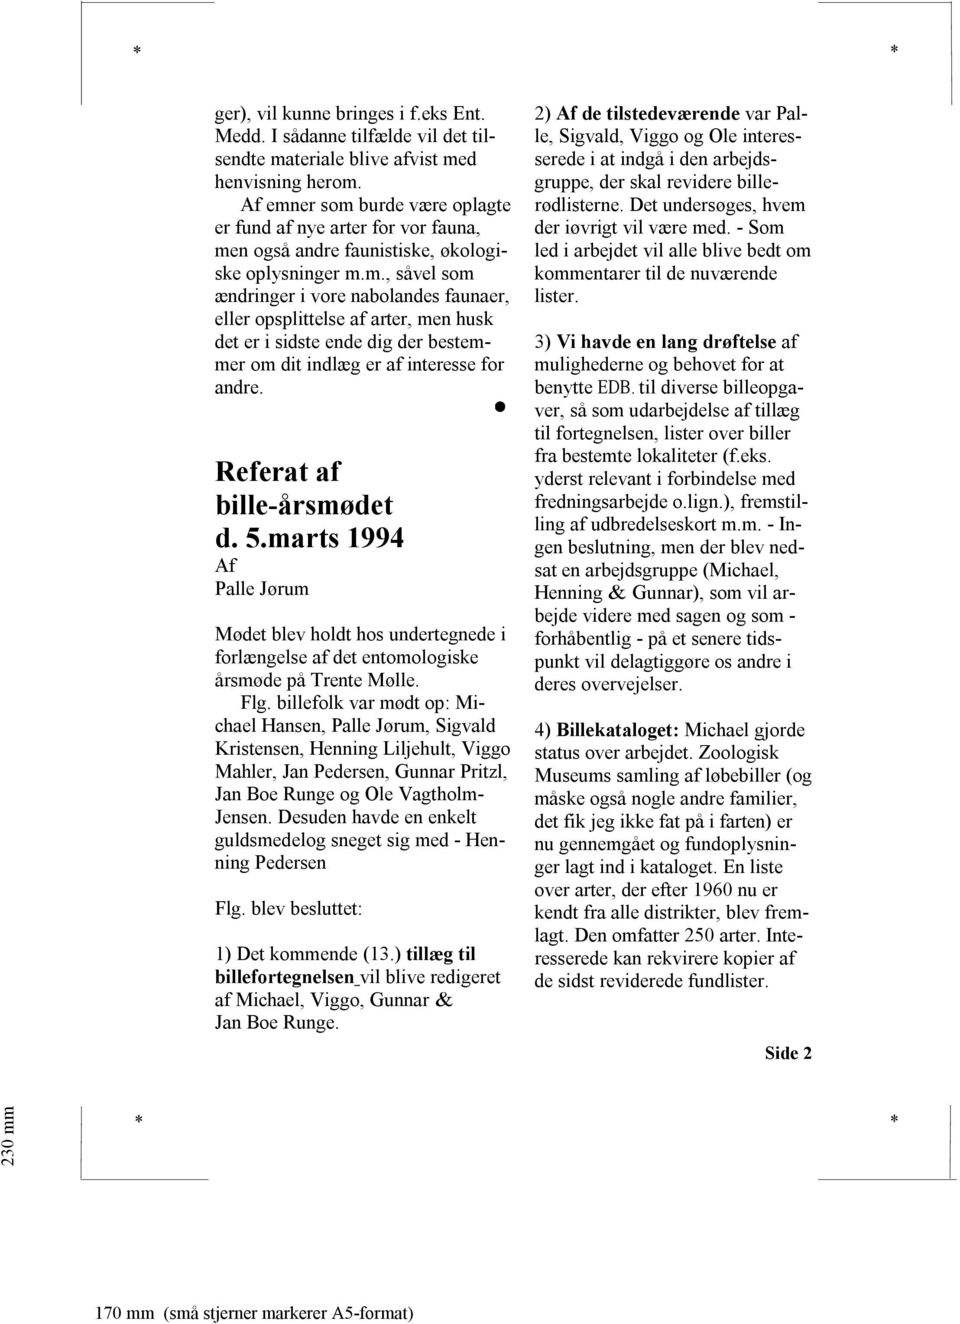 Referat af bille-årsmødet d. 5.marts 1994 Palle Jørum Mødet blev holdt hos undertegnede i forlængelse af det entomologiske årsmøde på Trente Mølle. Flg.